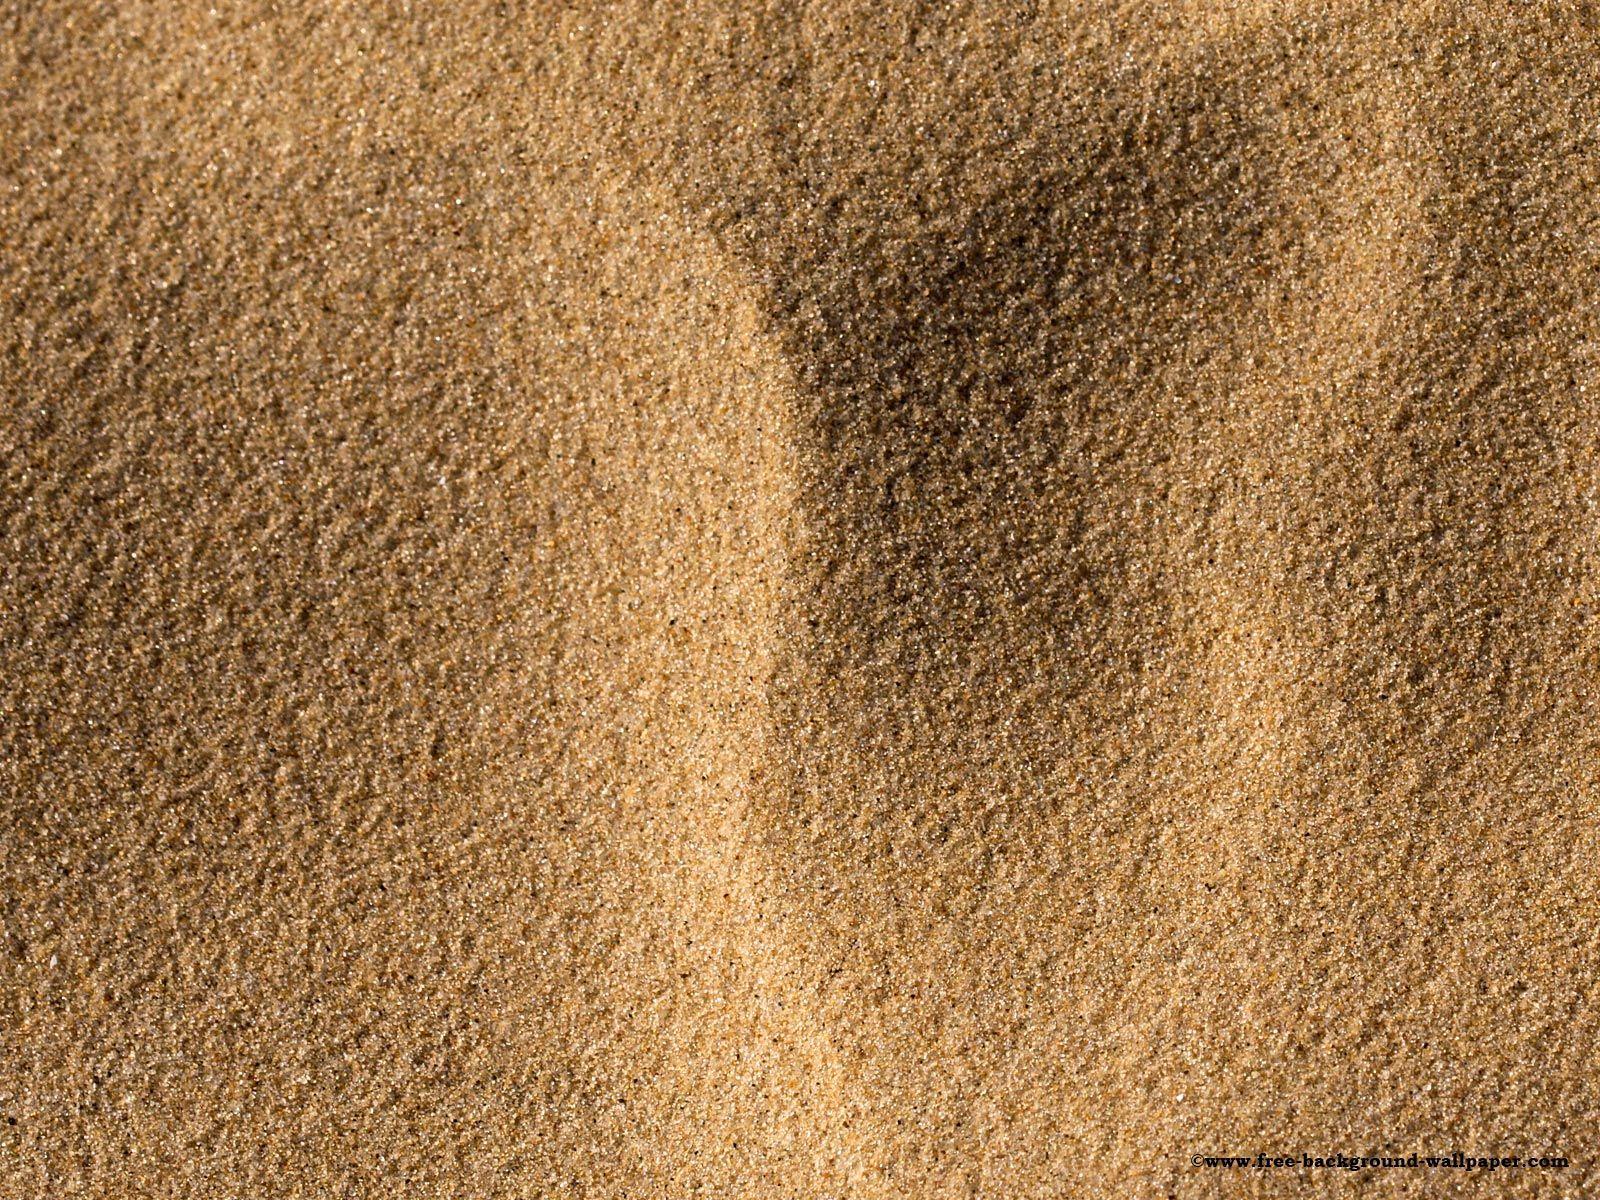 Ocean Floor Sand wallpaper Beautiful Light Brown Color Sand